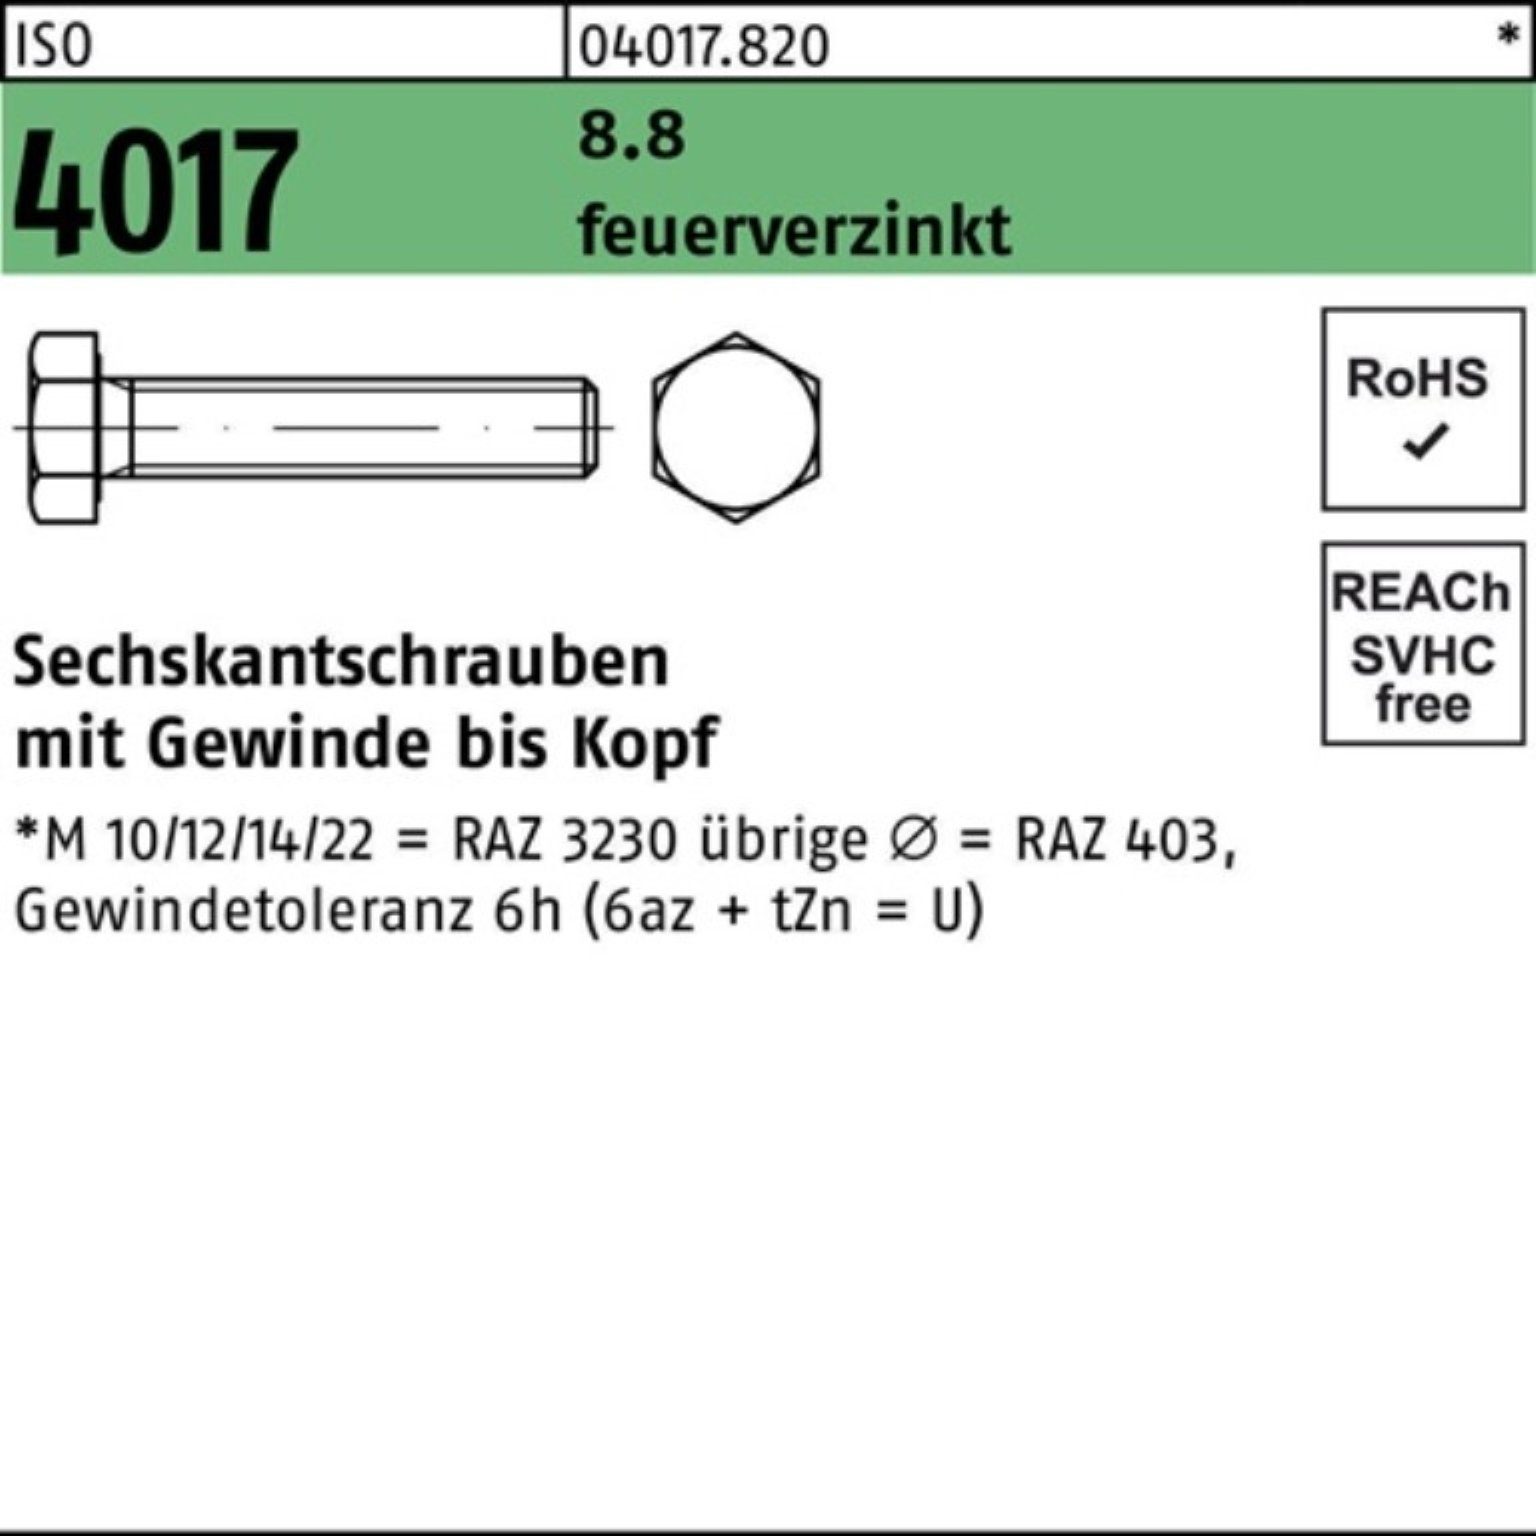 Bufab Sechskantschraube feuerverz. Pack VG M12x 4017 25 100er ISO Sechskantschraube 8.8 100 St